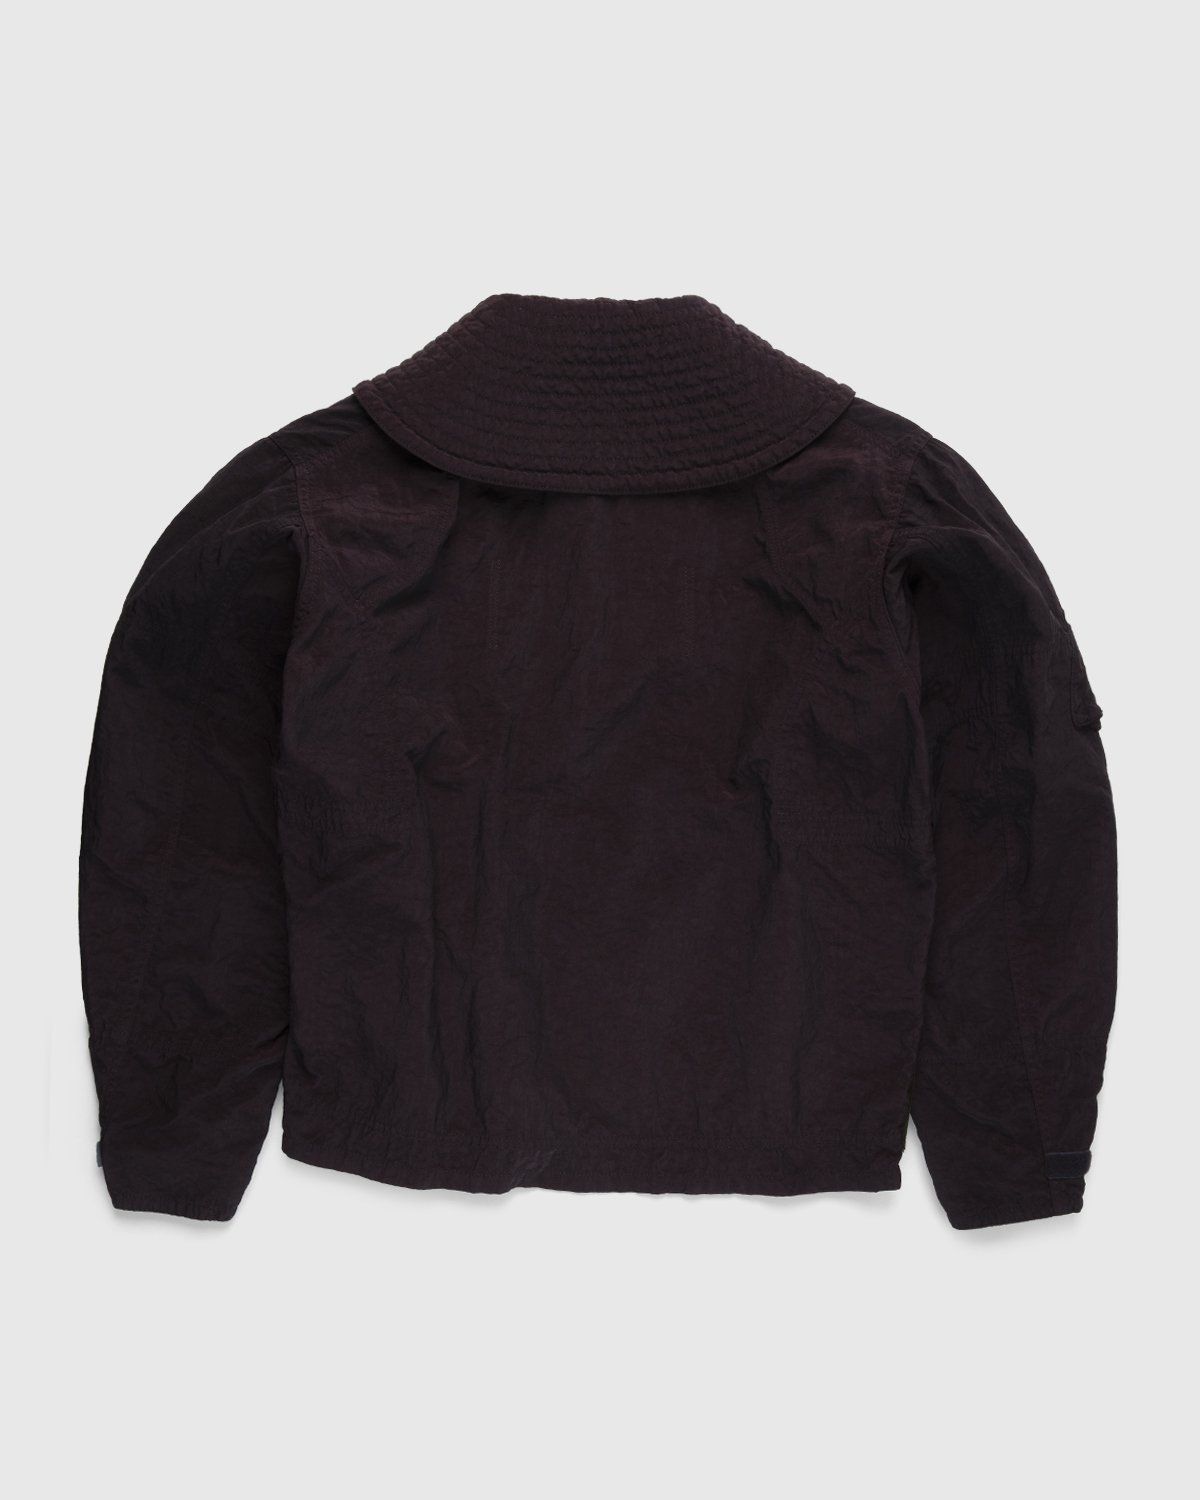 Maison Margiela – Sports Jacket Burgundy - Outerwear - Red - Image 2